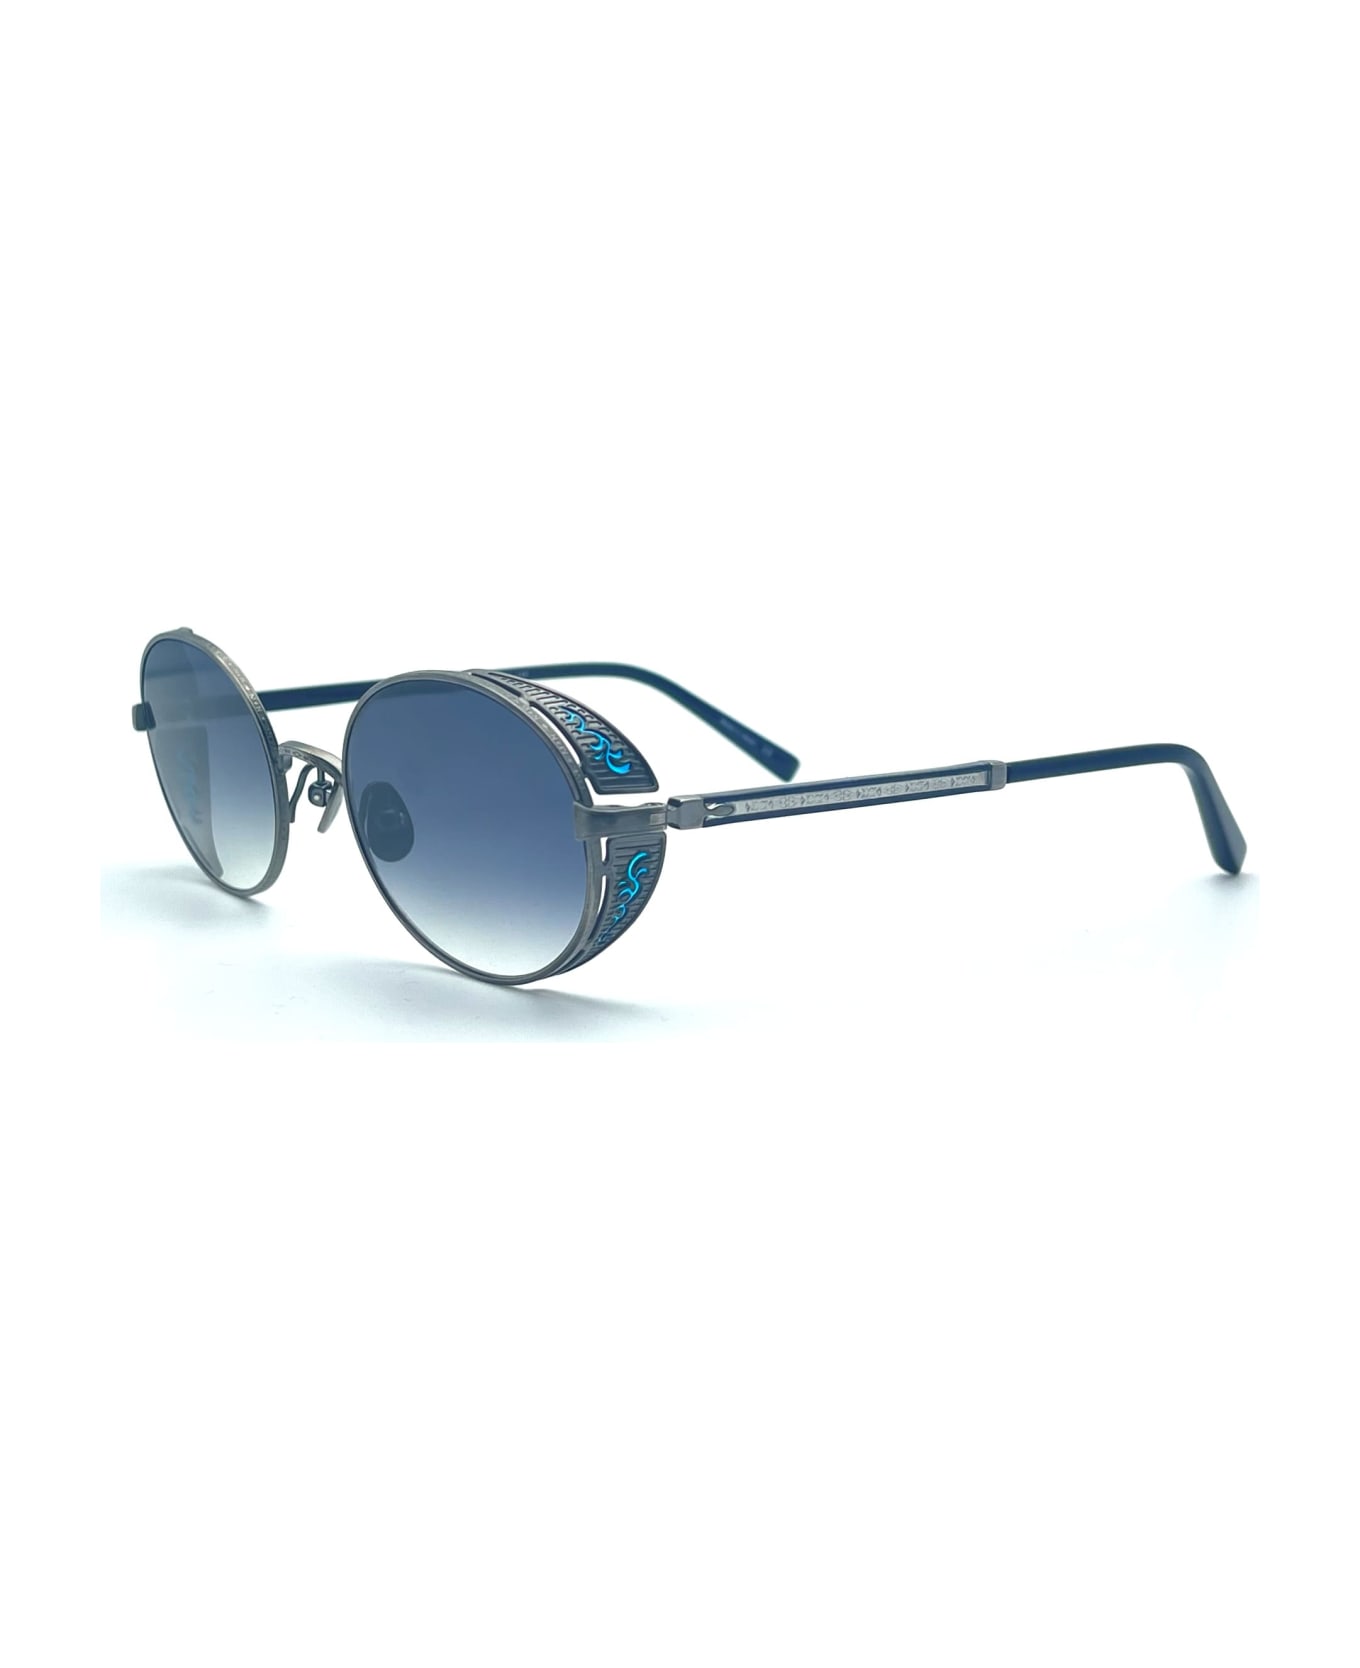 Matsuda M3137 - Antique Silver Sunglasses - Silver